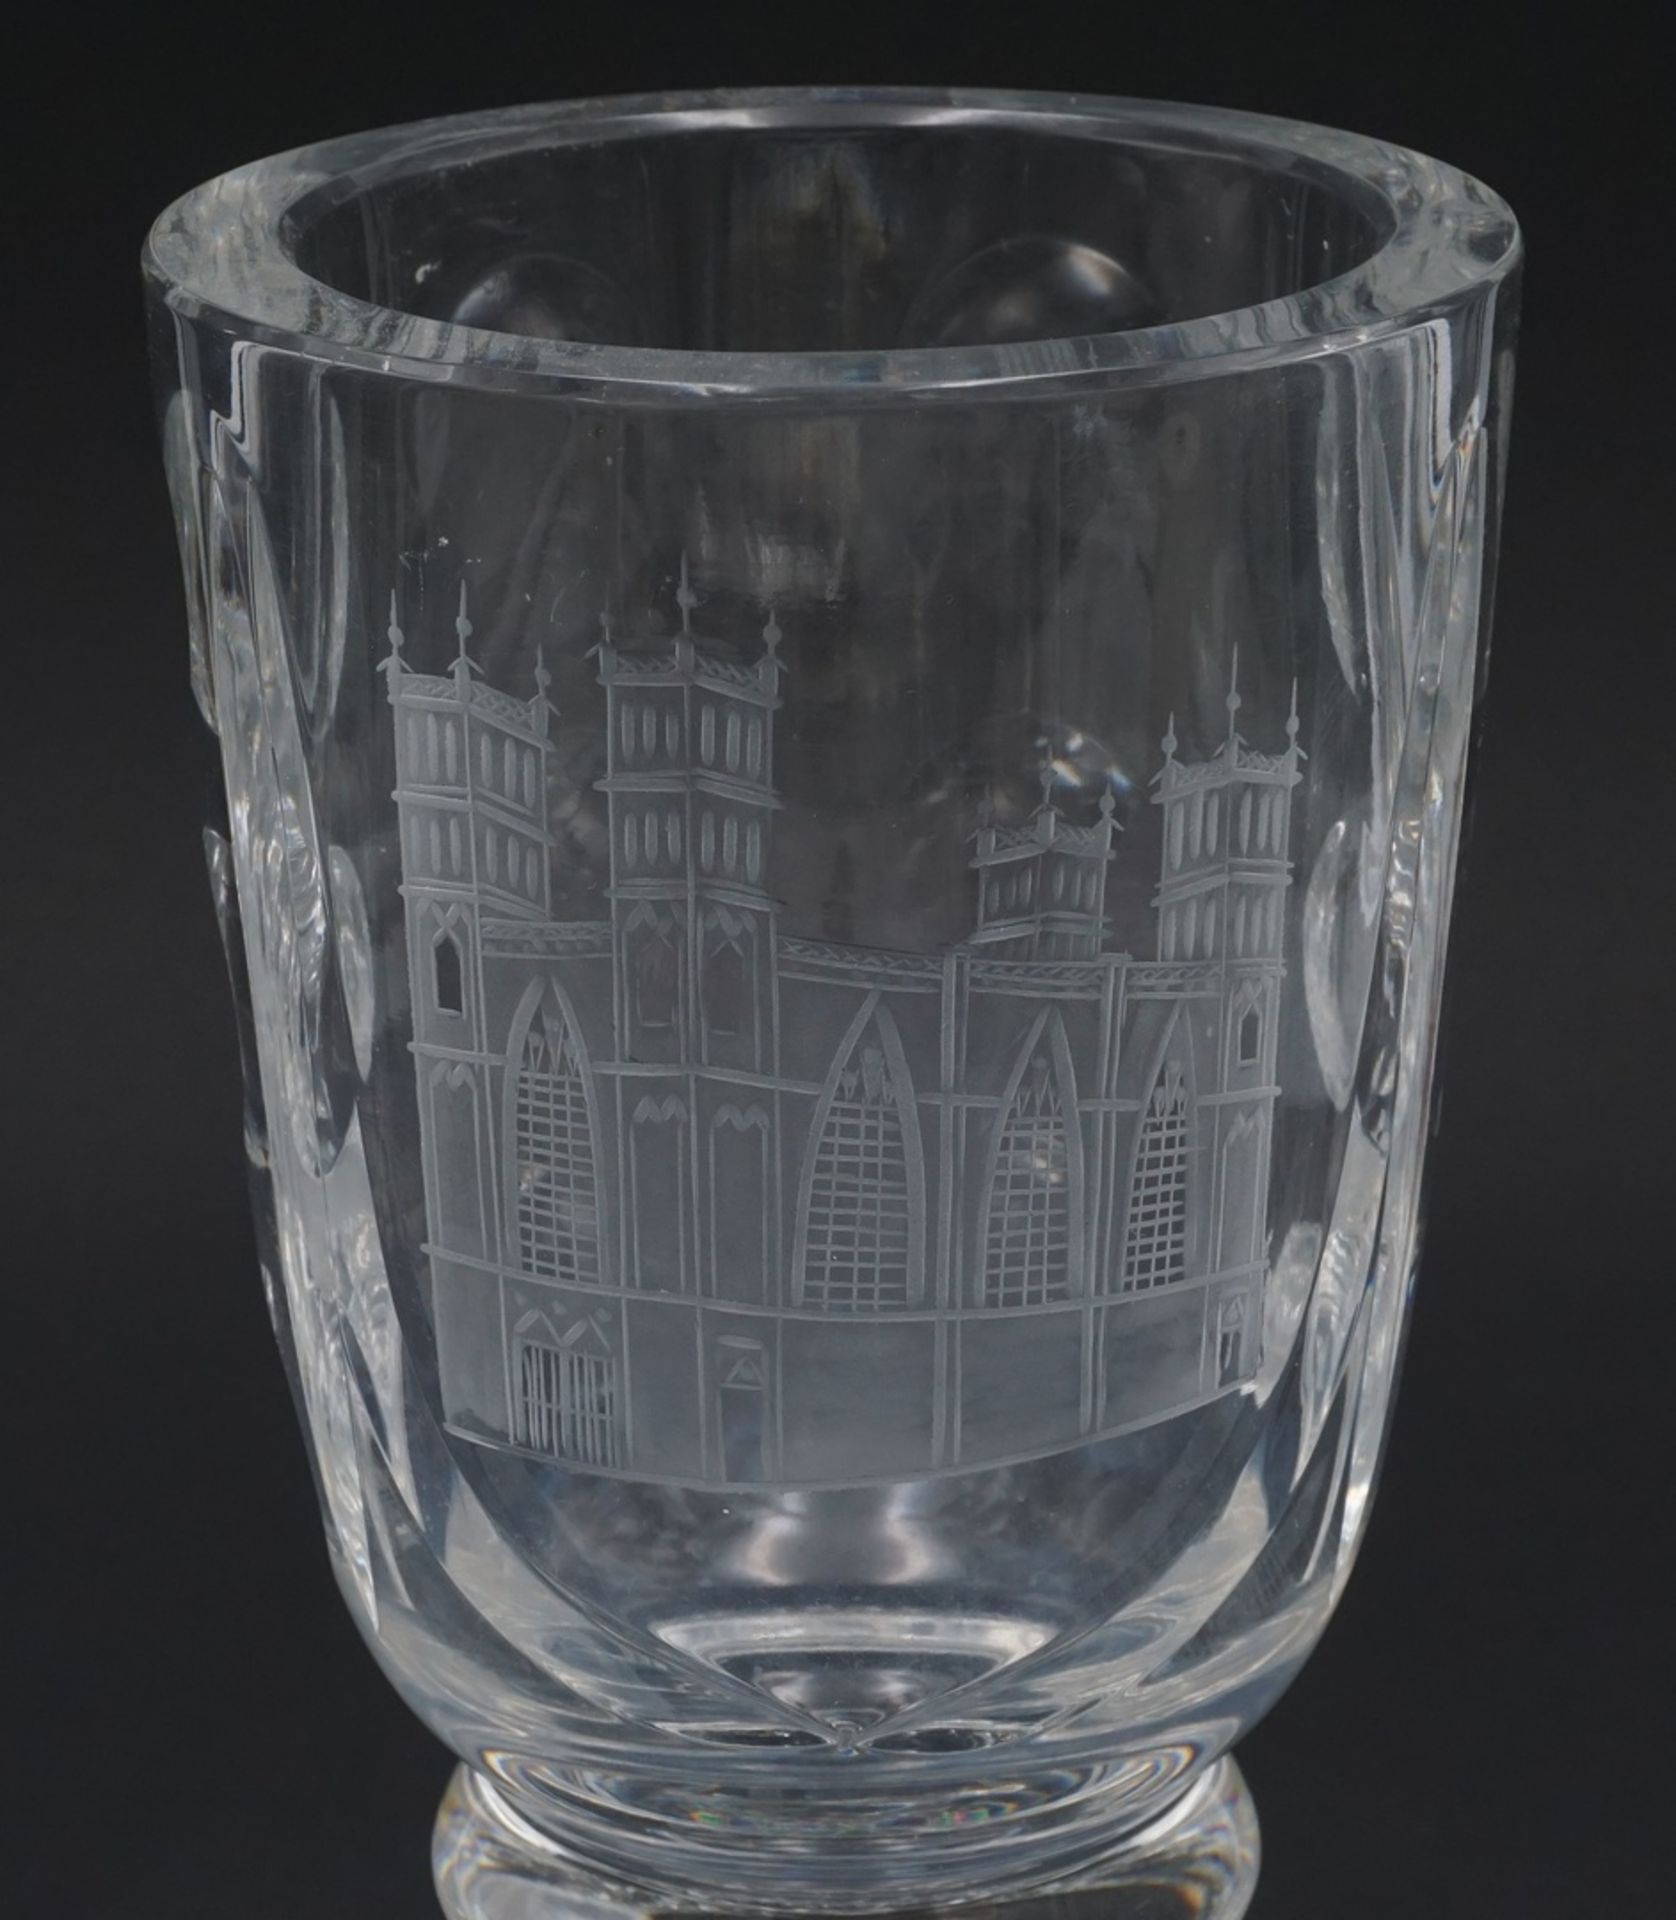 Pokalglas / Andenkenglas mit gravierter Kathedrale, 19/20. Jh.Kristallglas, runder Stand mit - Bild 3 aus 3